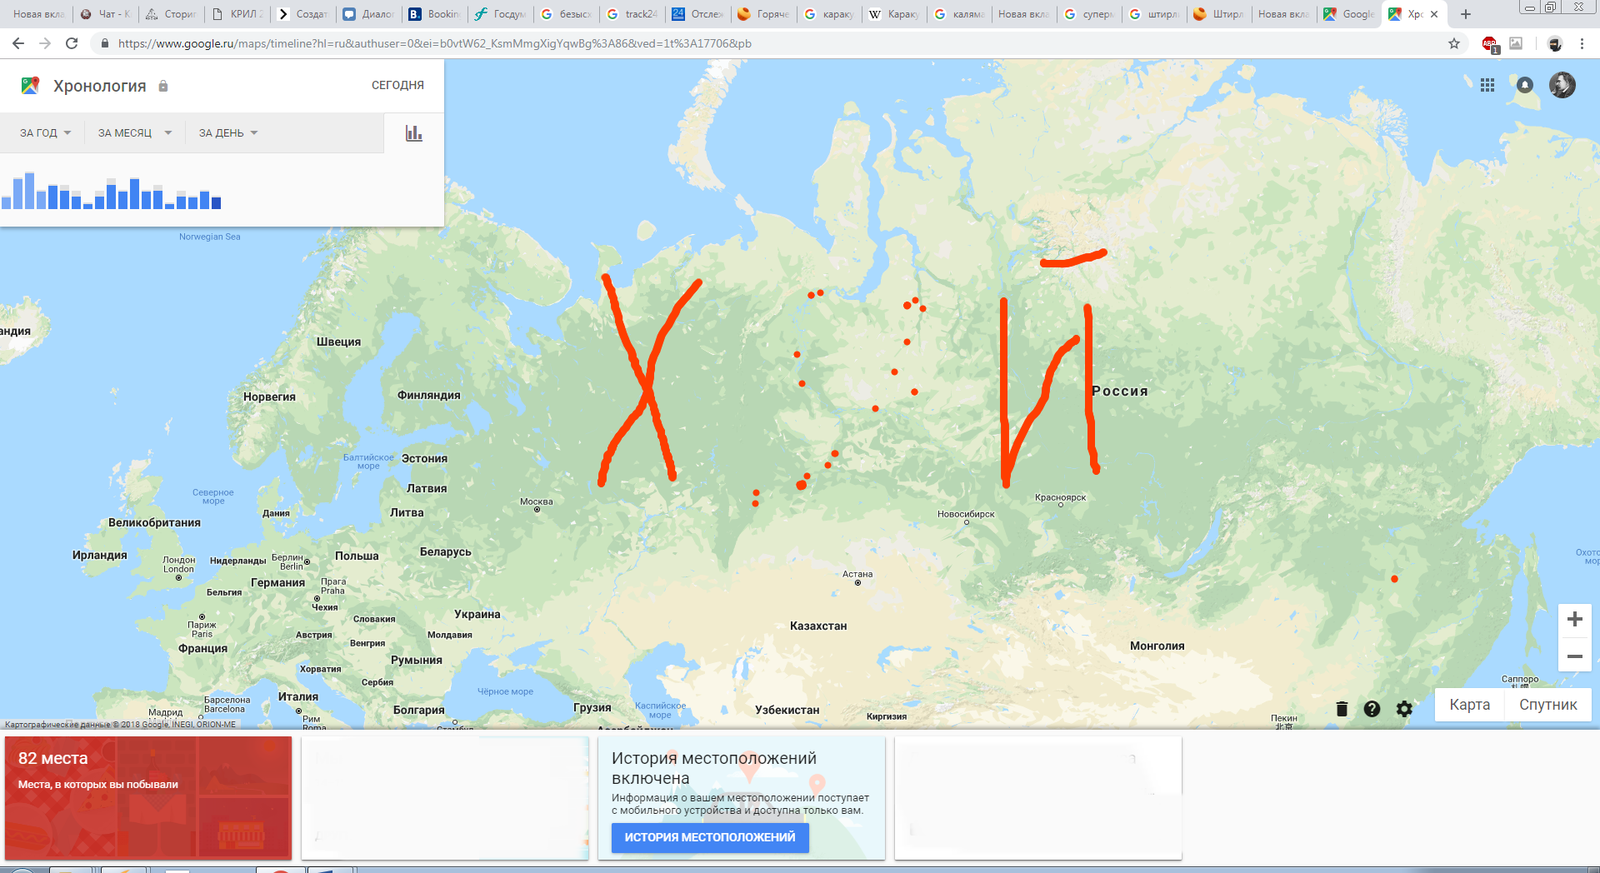 Карта россии гугл карты. Карта России Google. Карта Украины Google. Карта Украины гугл карты.